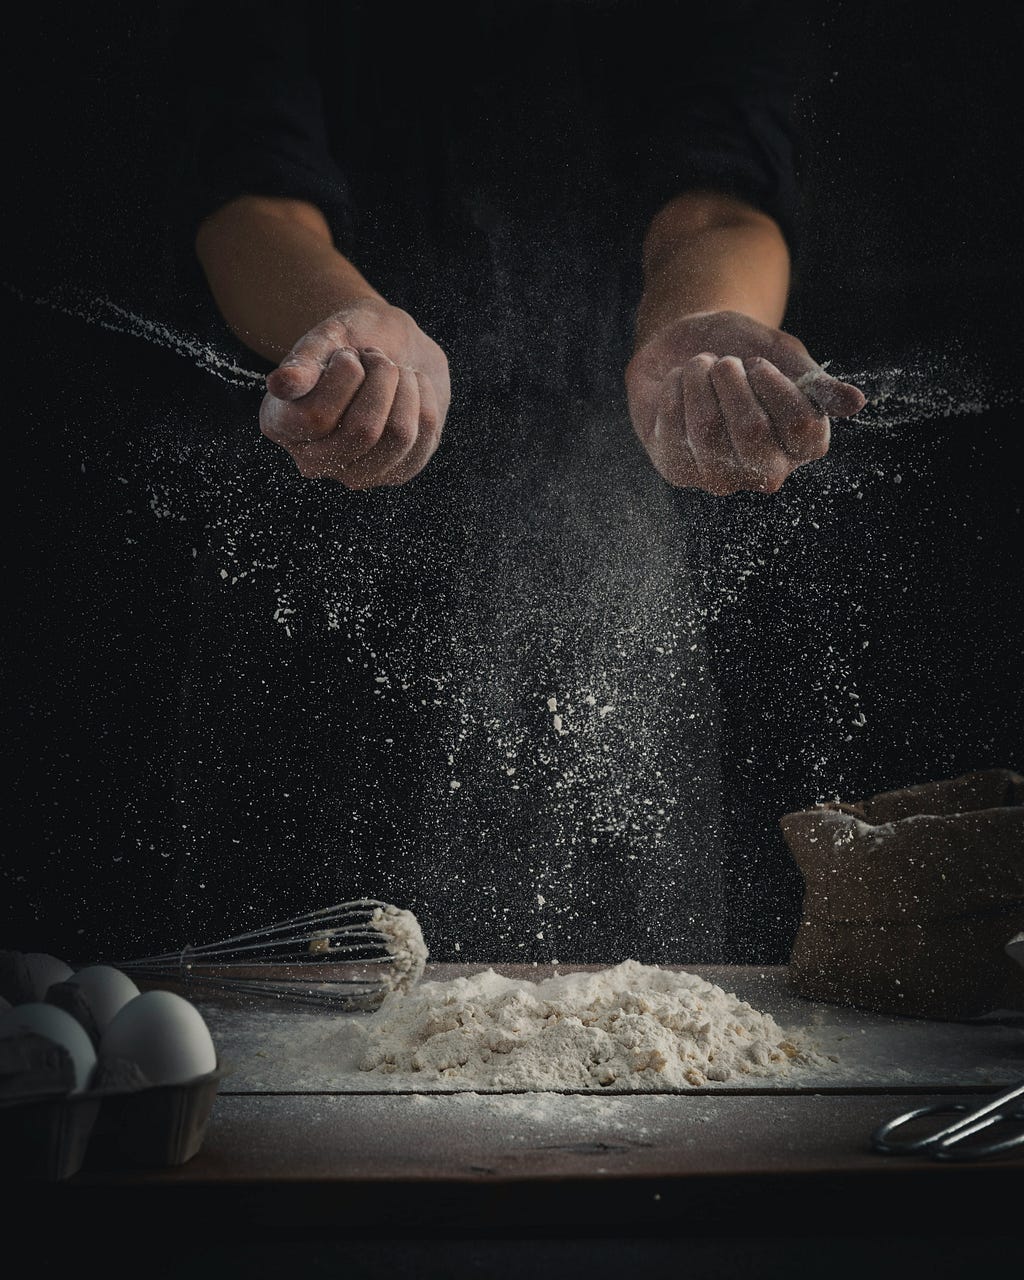 A person sprinkling flour